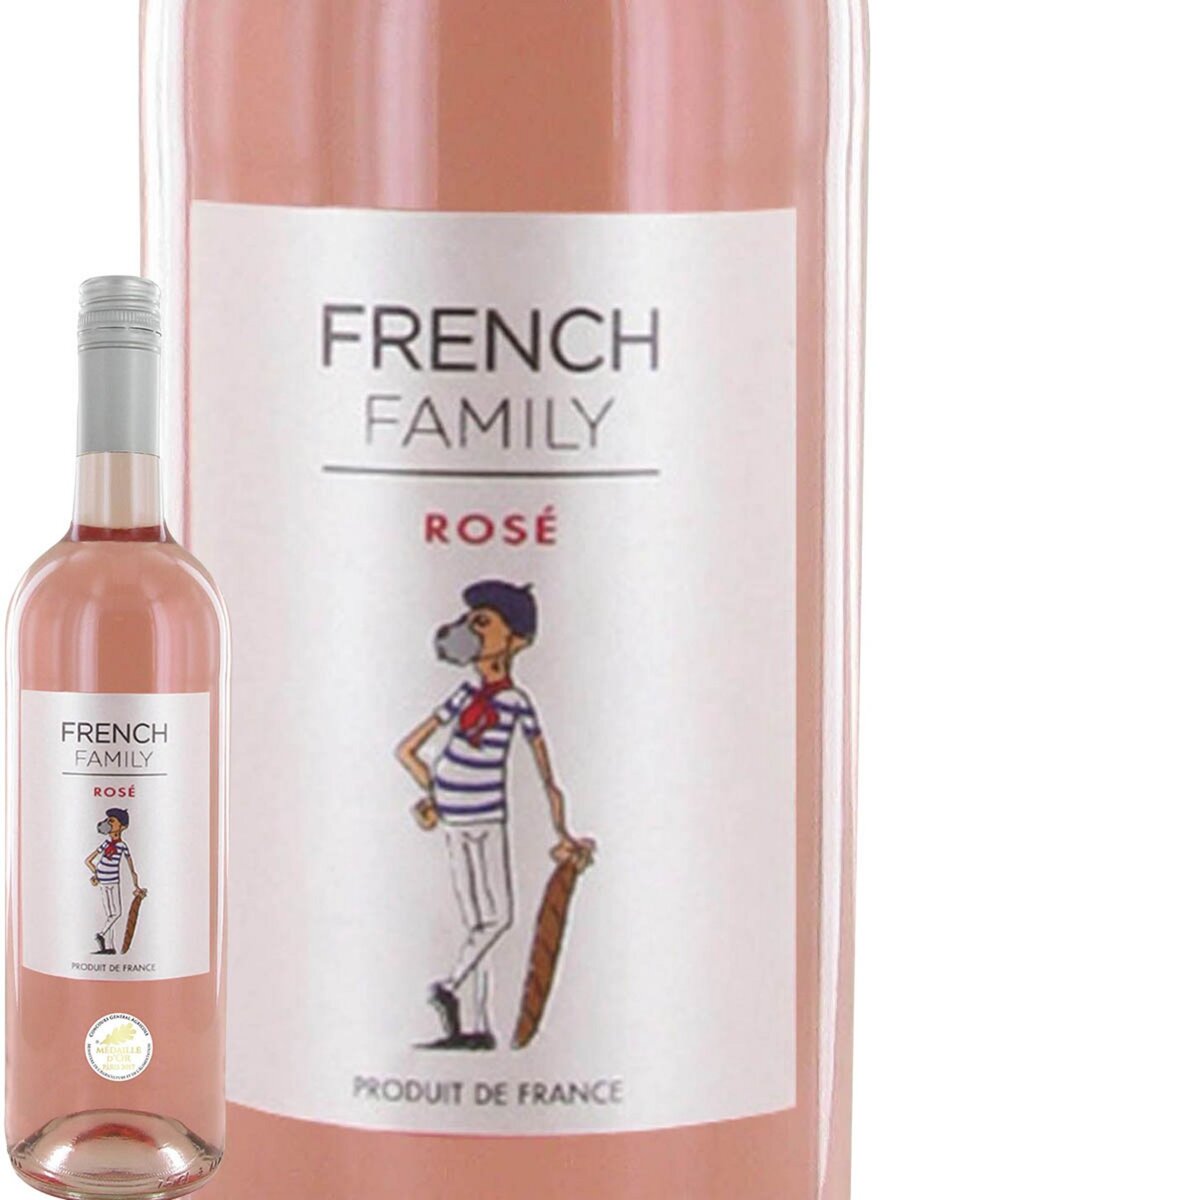 French Family Bordeaux Rosé 2016